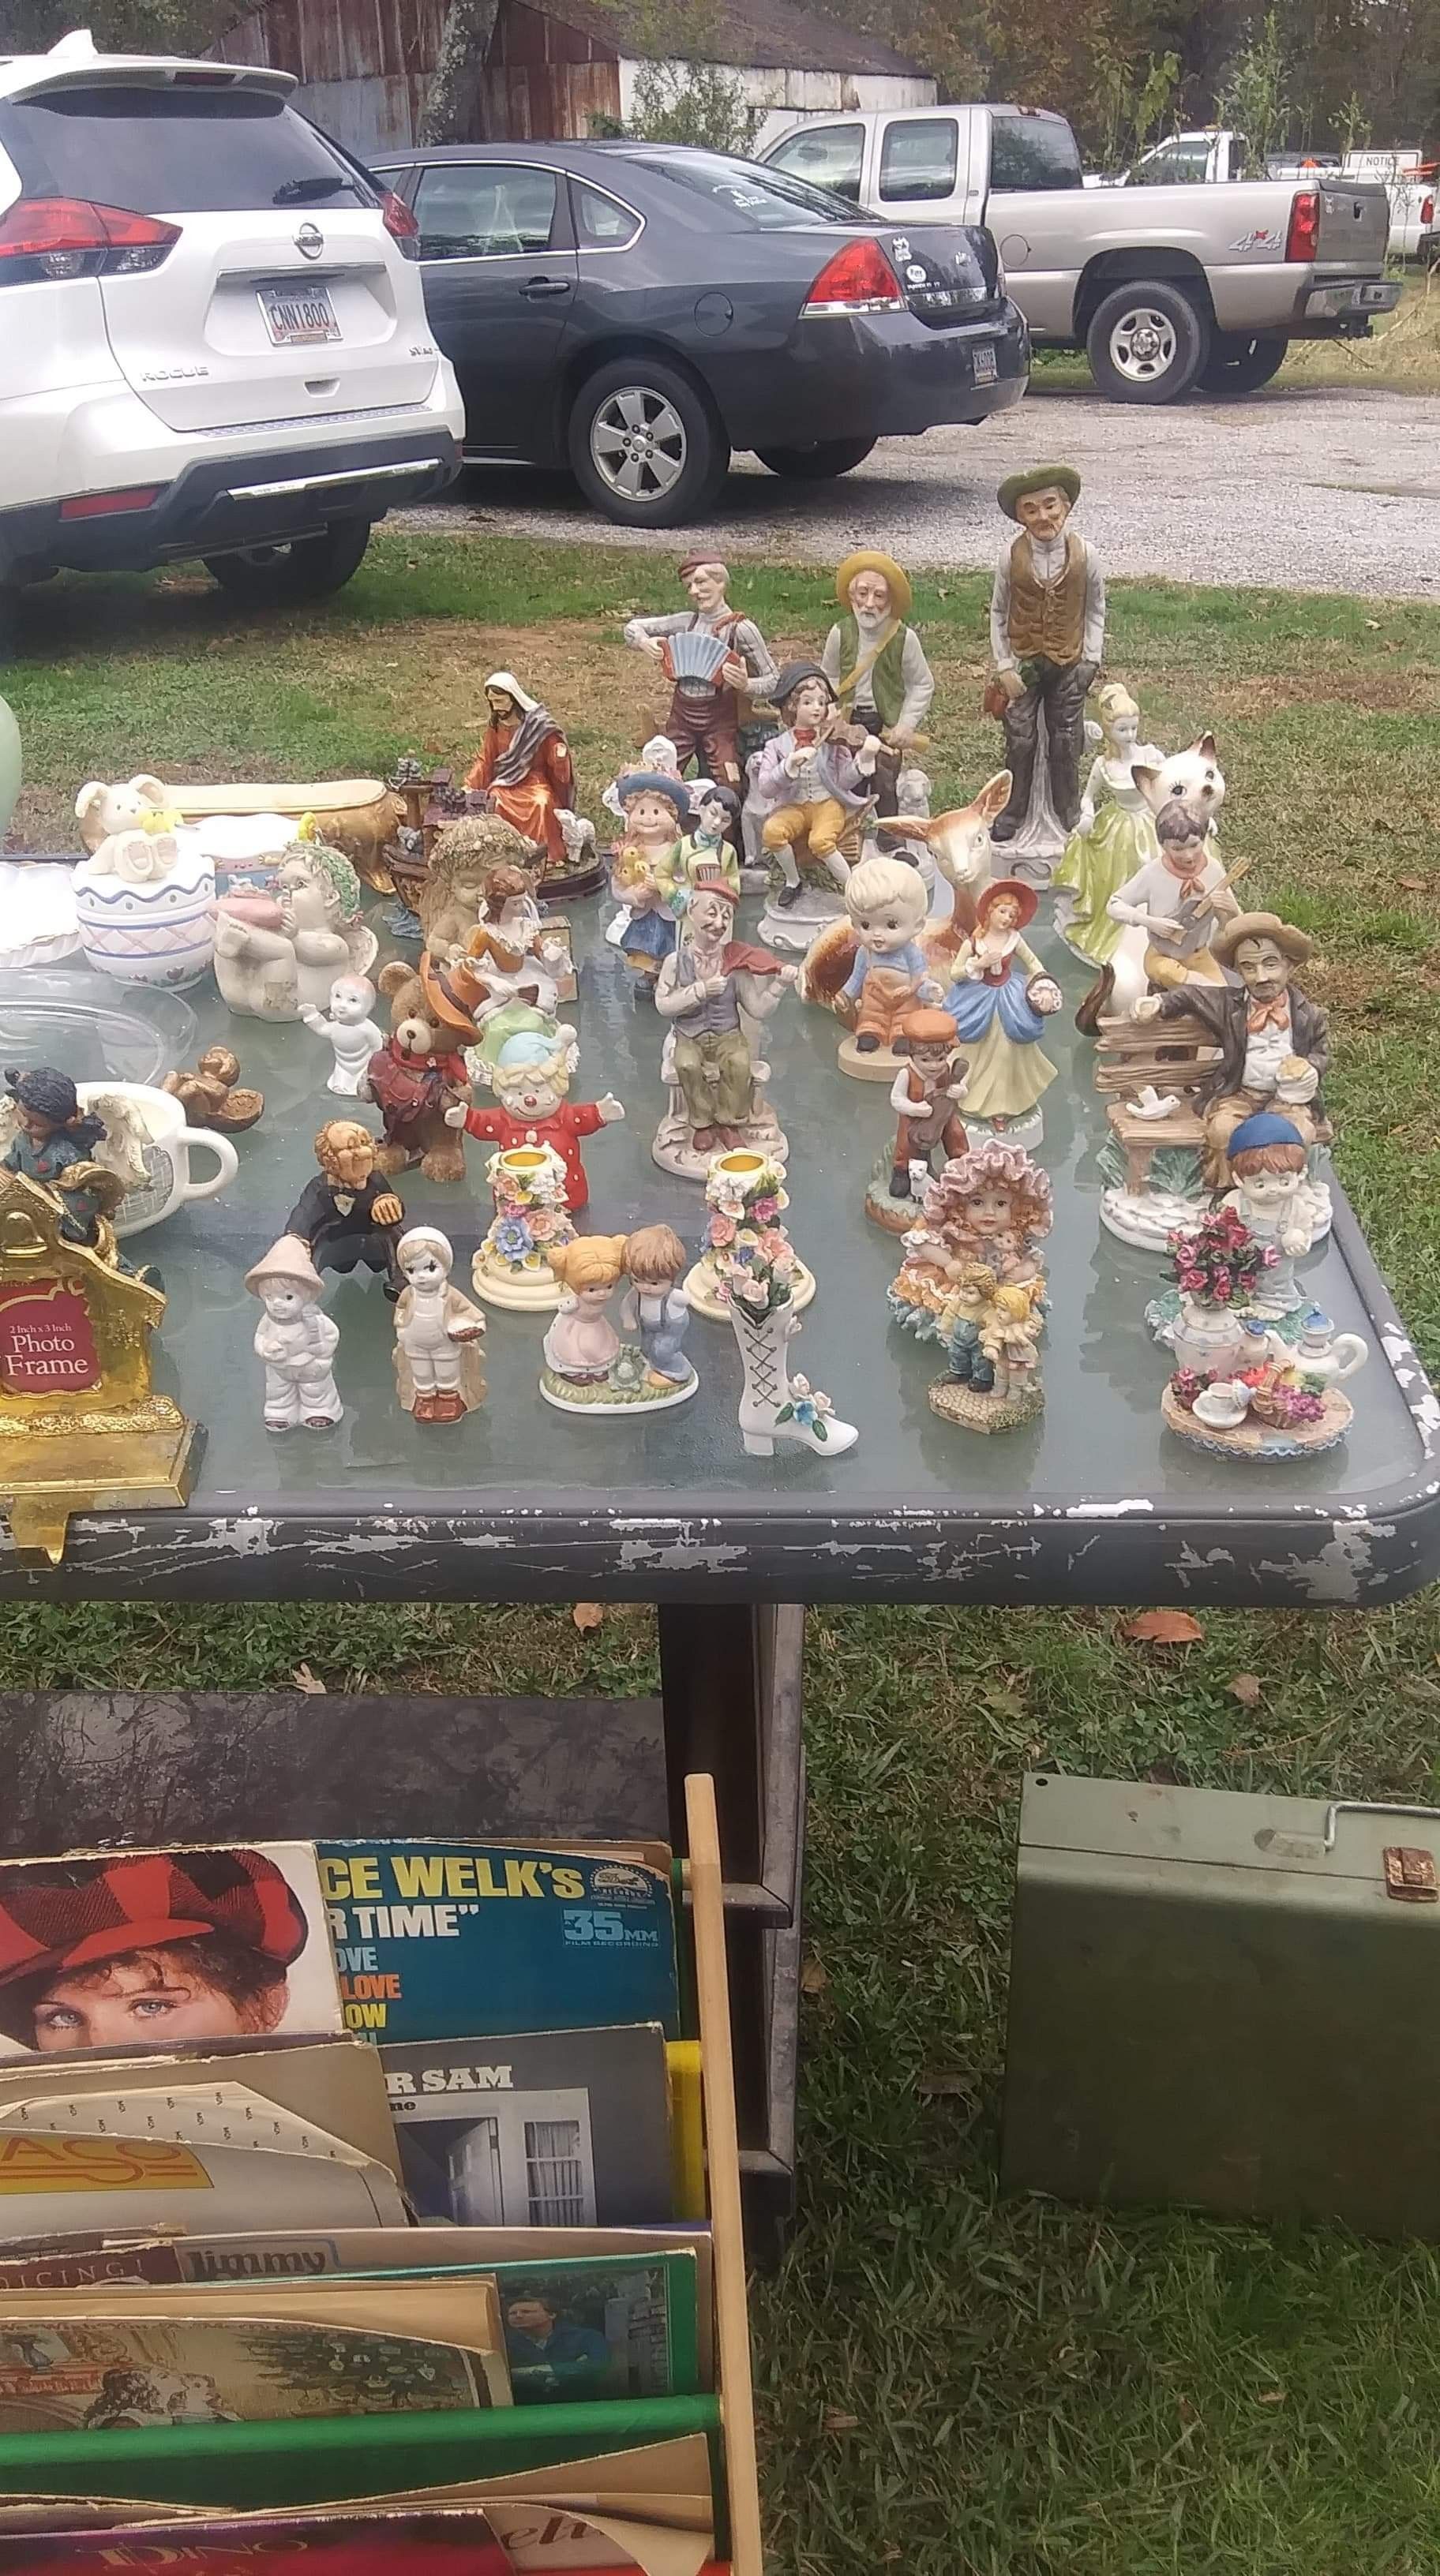 Vintage figurines